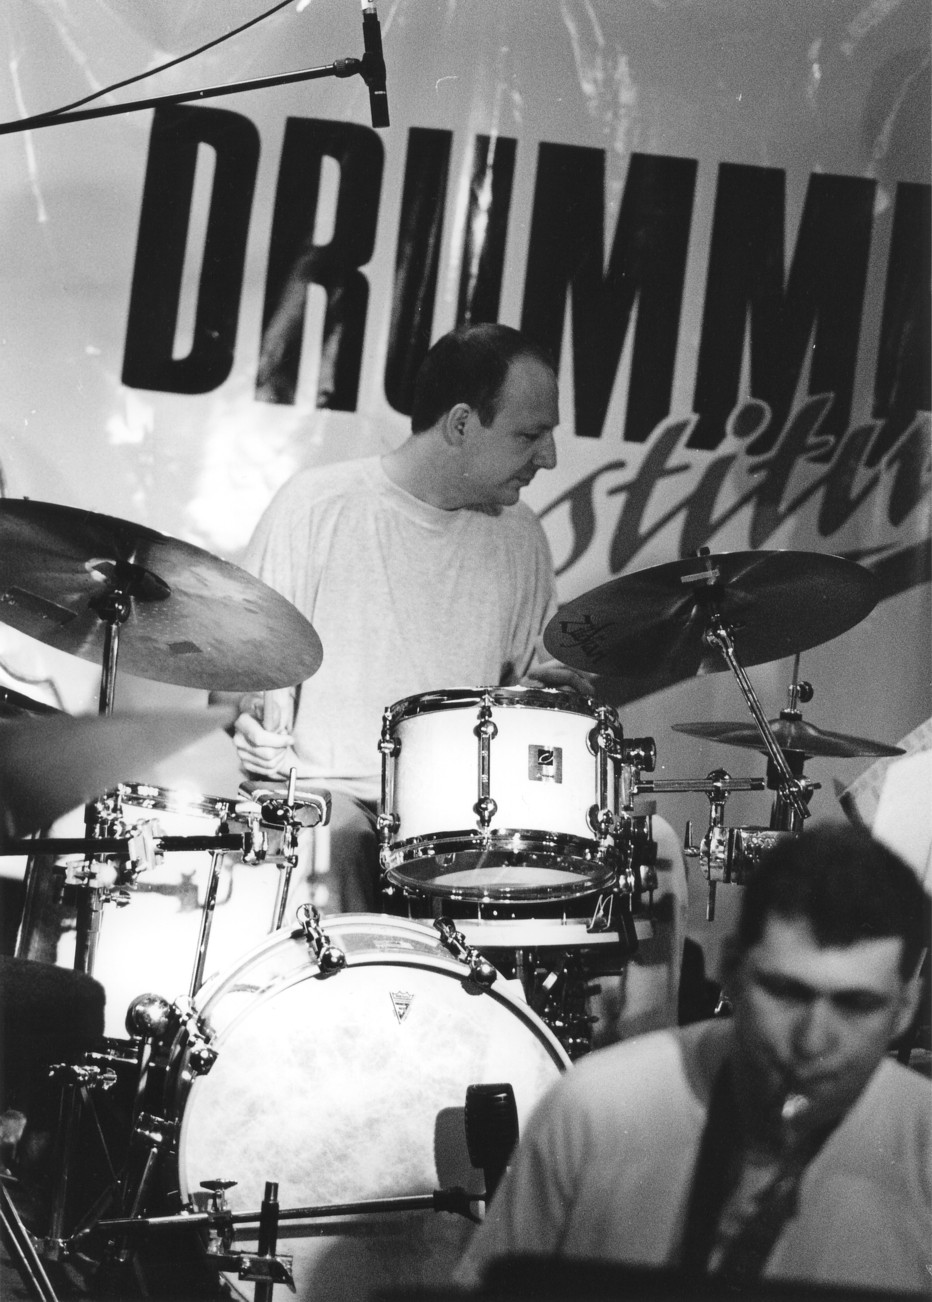 Jürgen   Drummers Institute